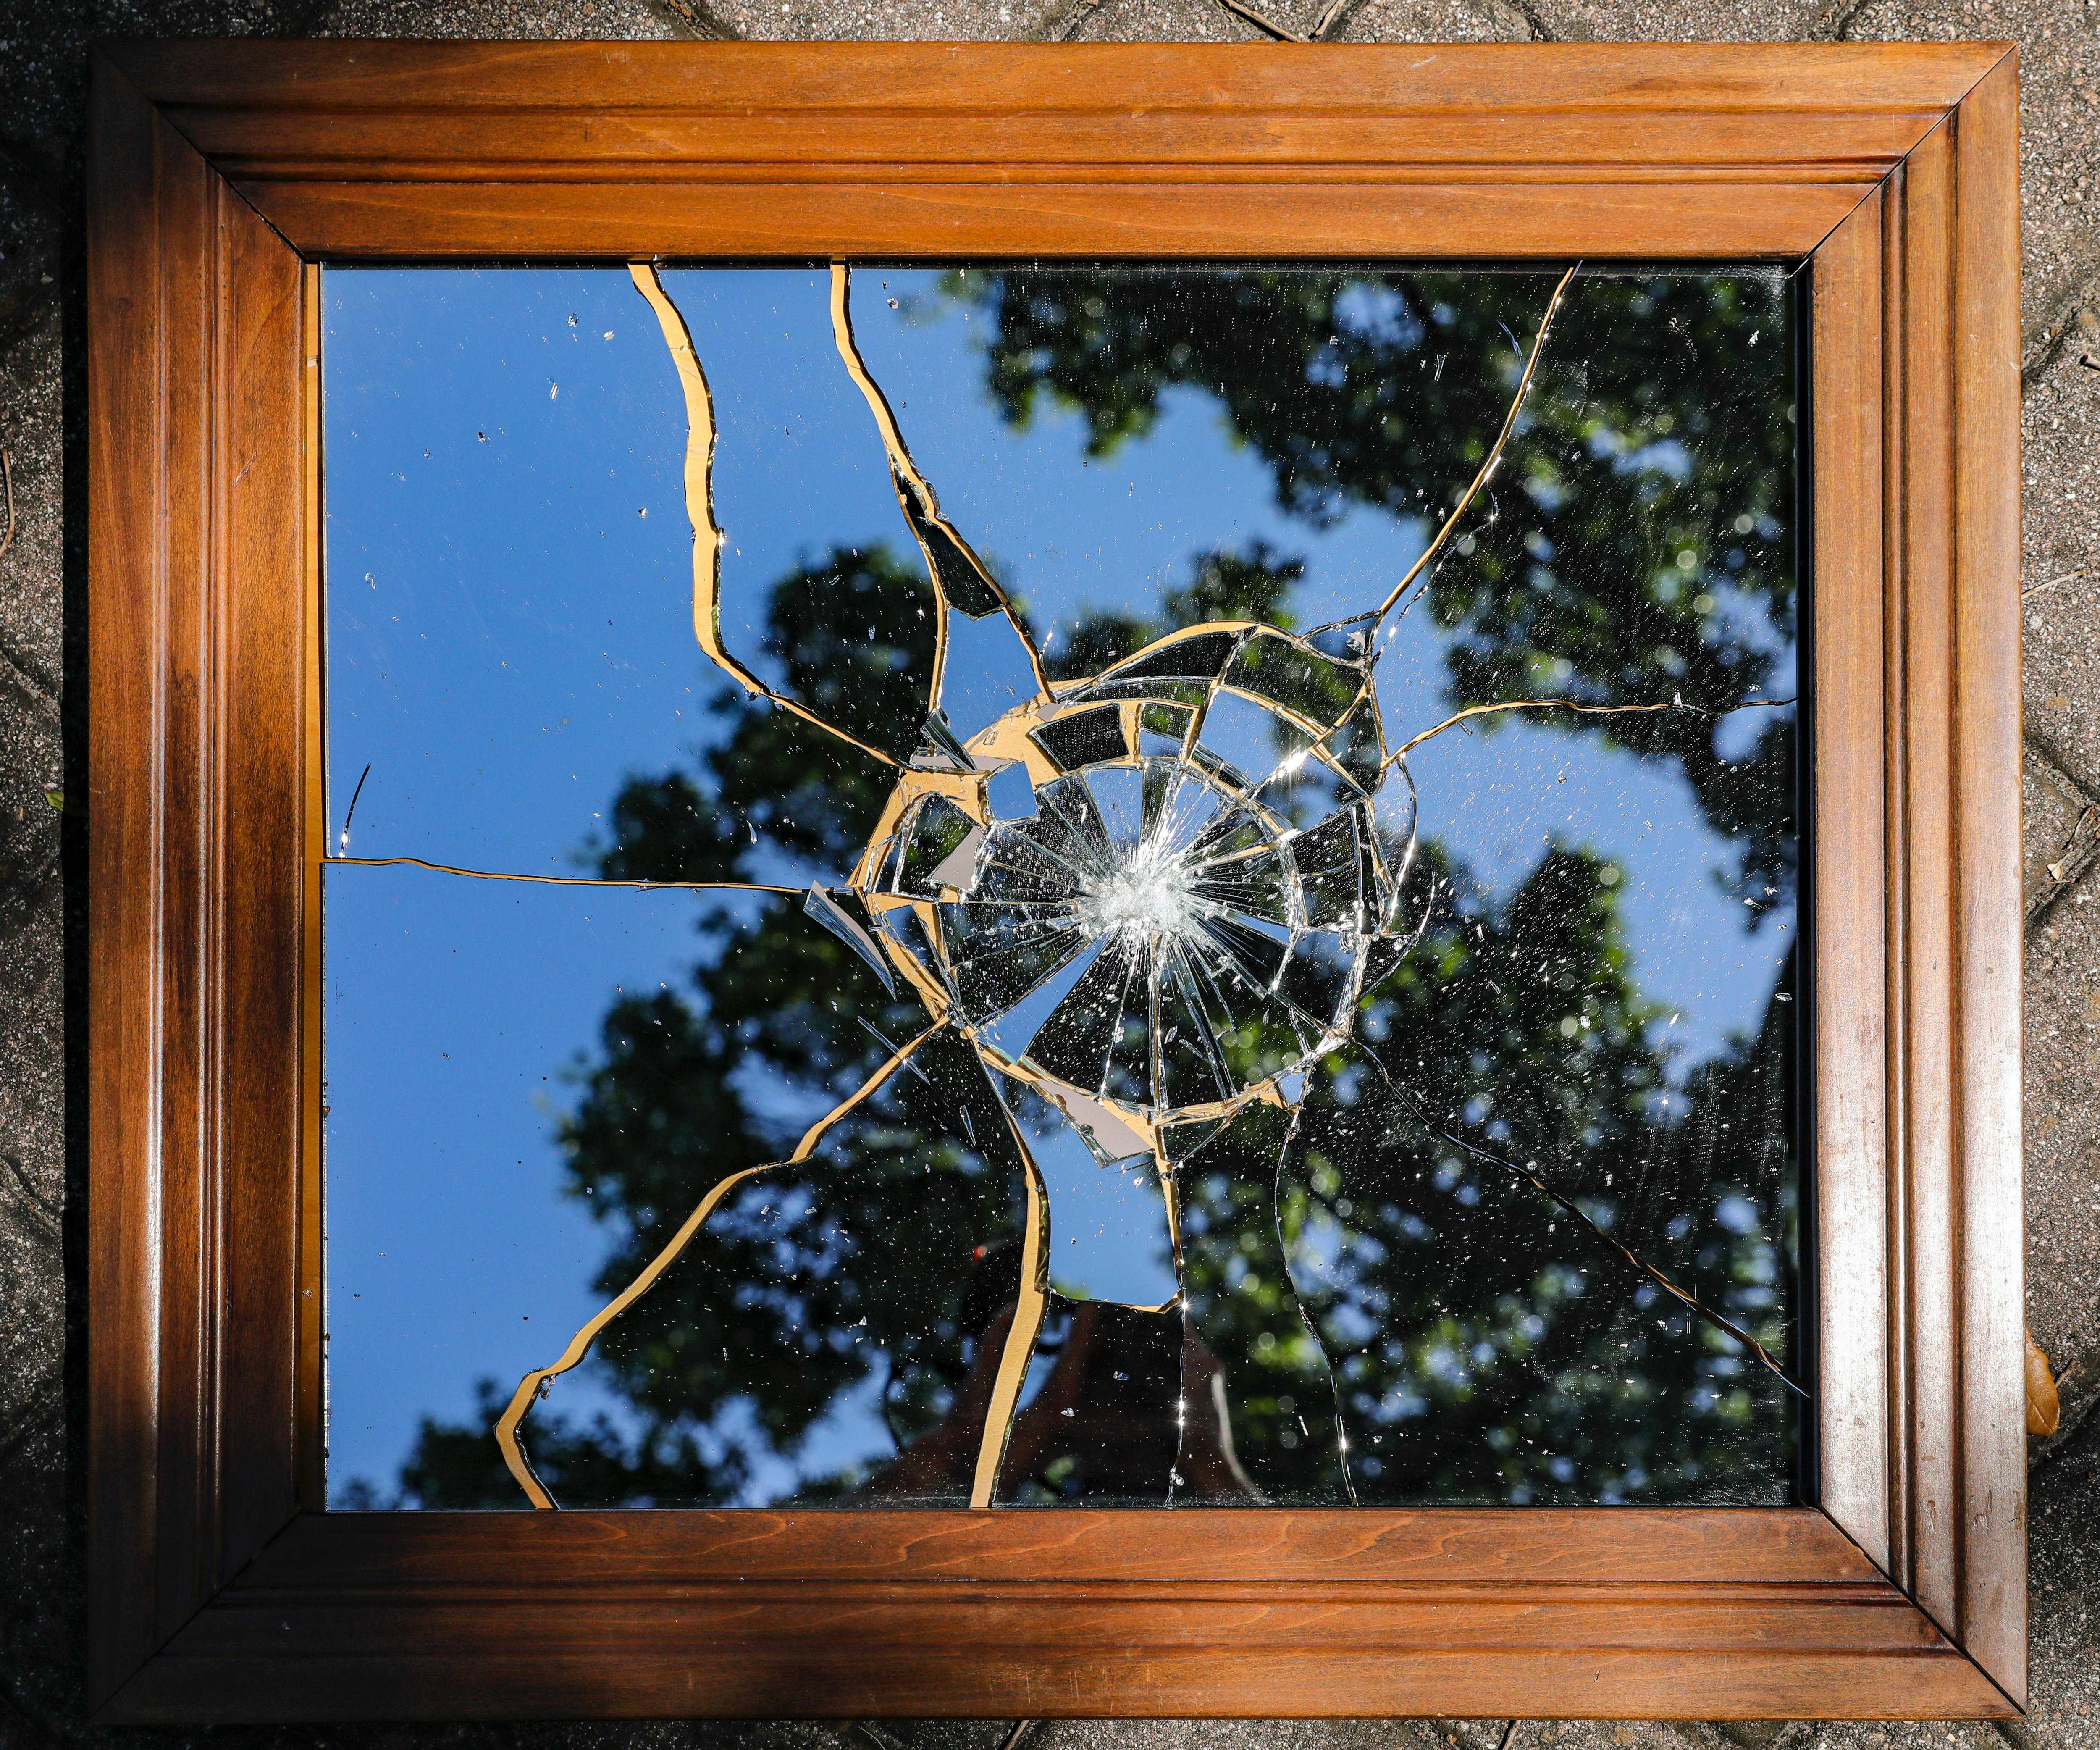 Разбить зеркало случайно дома. Разбитое зеркало. Треснутое зеркало. Разбитое зеркало в шкафу. Разбитое зеркало примета.